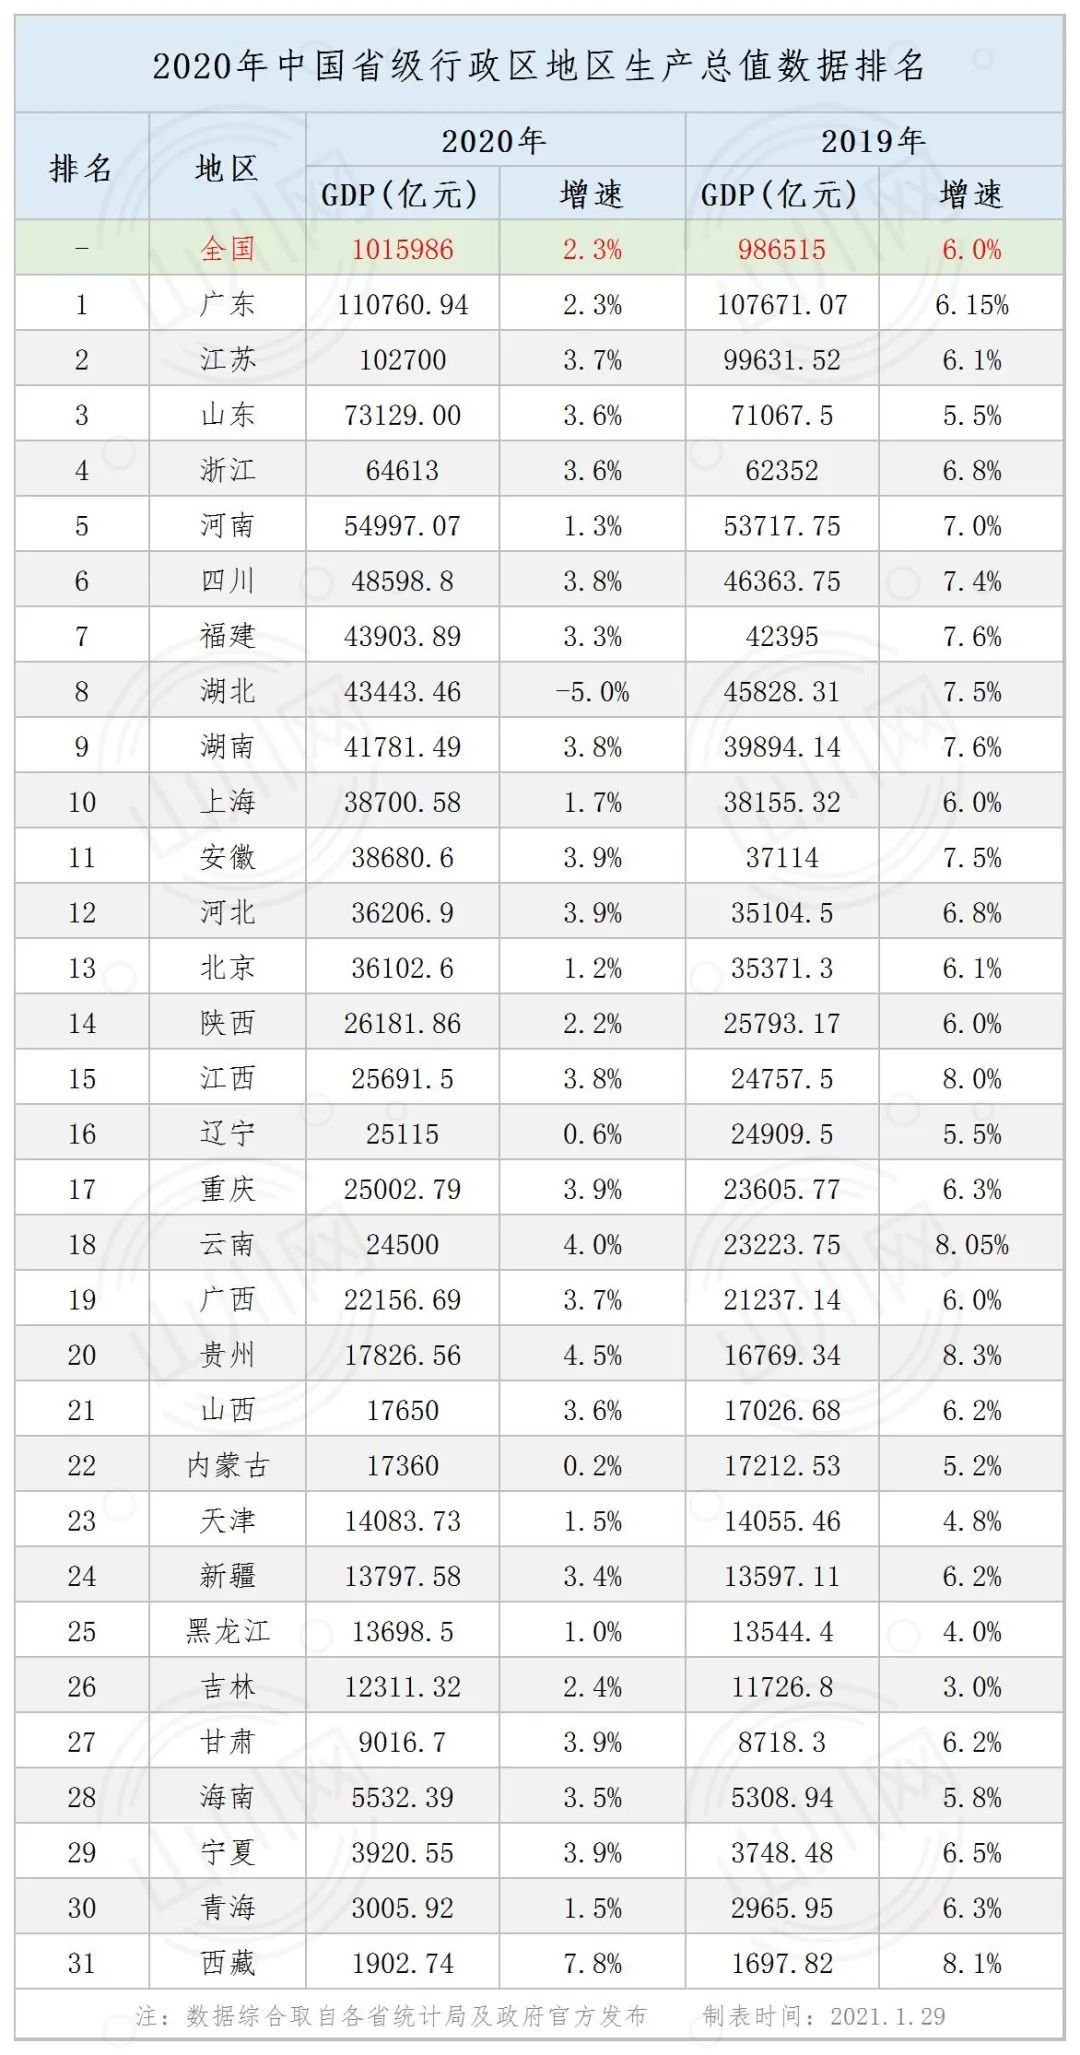 2020年中国省区GDP增速排名:内地31省区